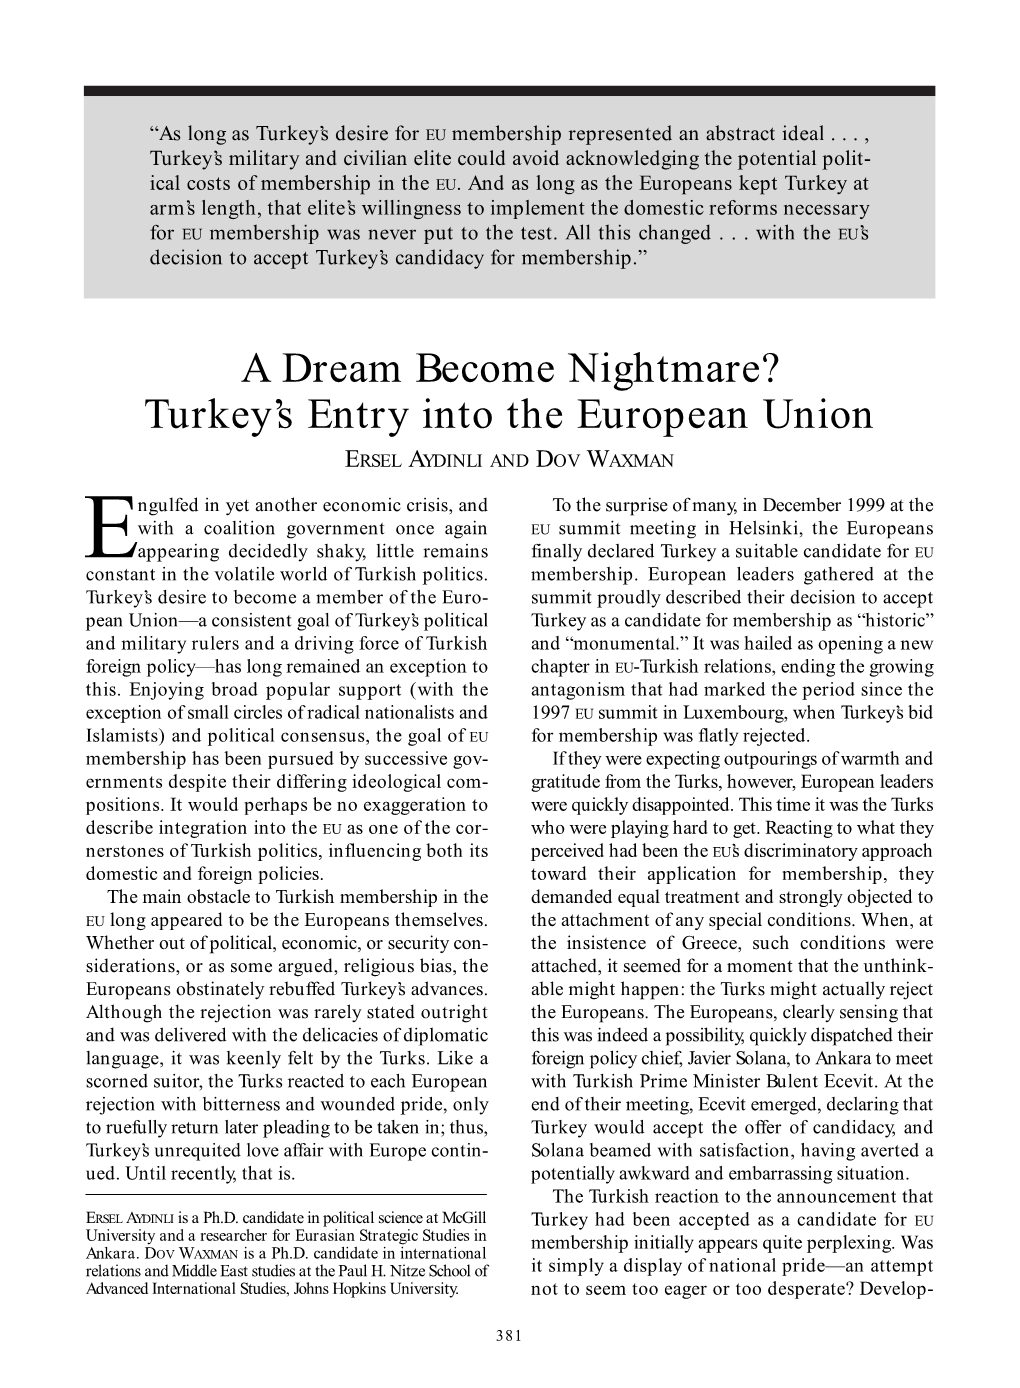 Turkey's Entry Into the European Union